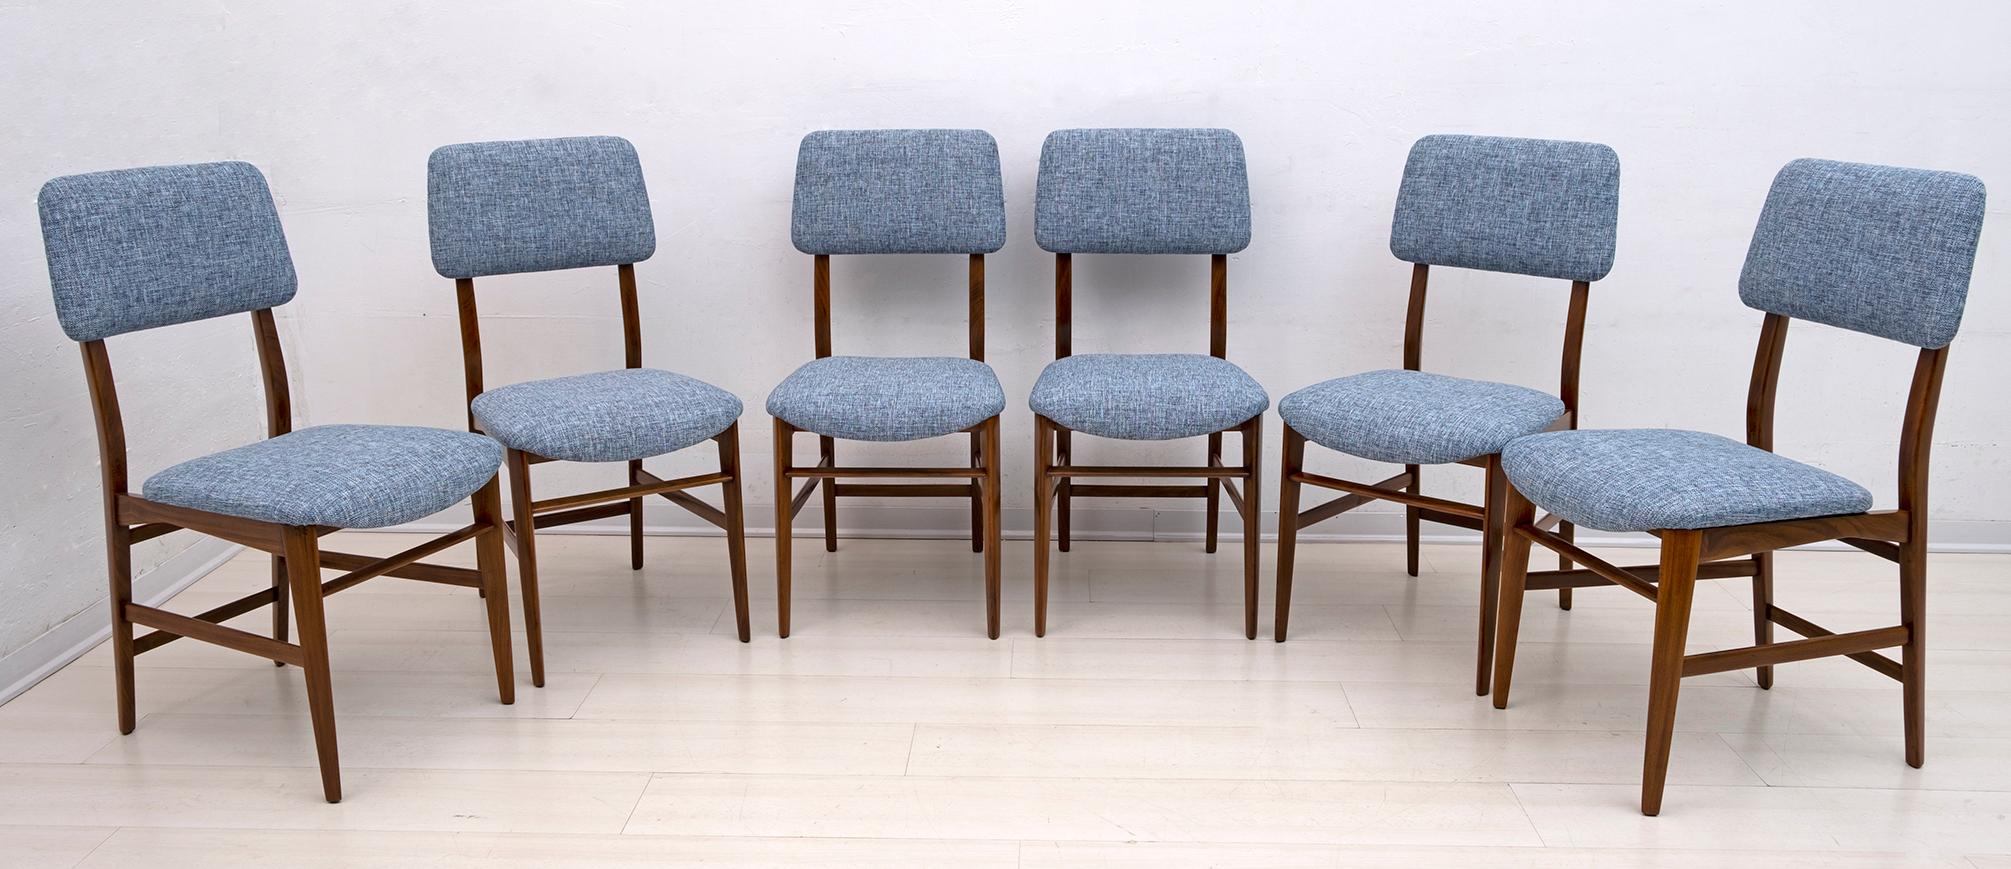 Esstisch und sechs Stühle, entworfen von Edmondo Palutari für Dassi, das Set ist aus Teakholz und wurde restauriert und die Stühle mit einem neuen Hanfstoff bezogen, ähnlich dem Original, Italien, 1950er Jahre.
Der Tisch misst cm:
Durchmesser 110 cm